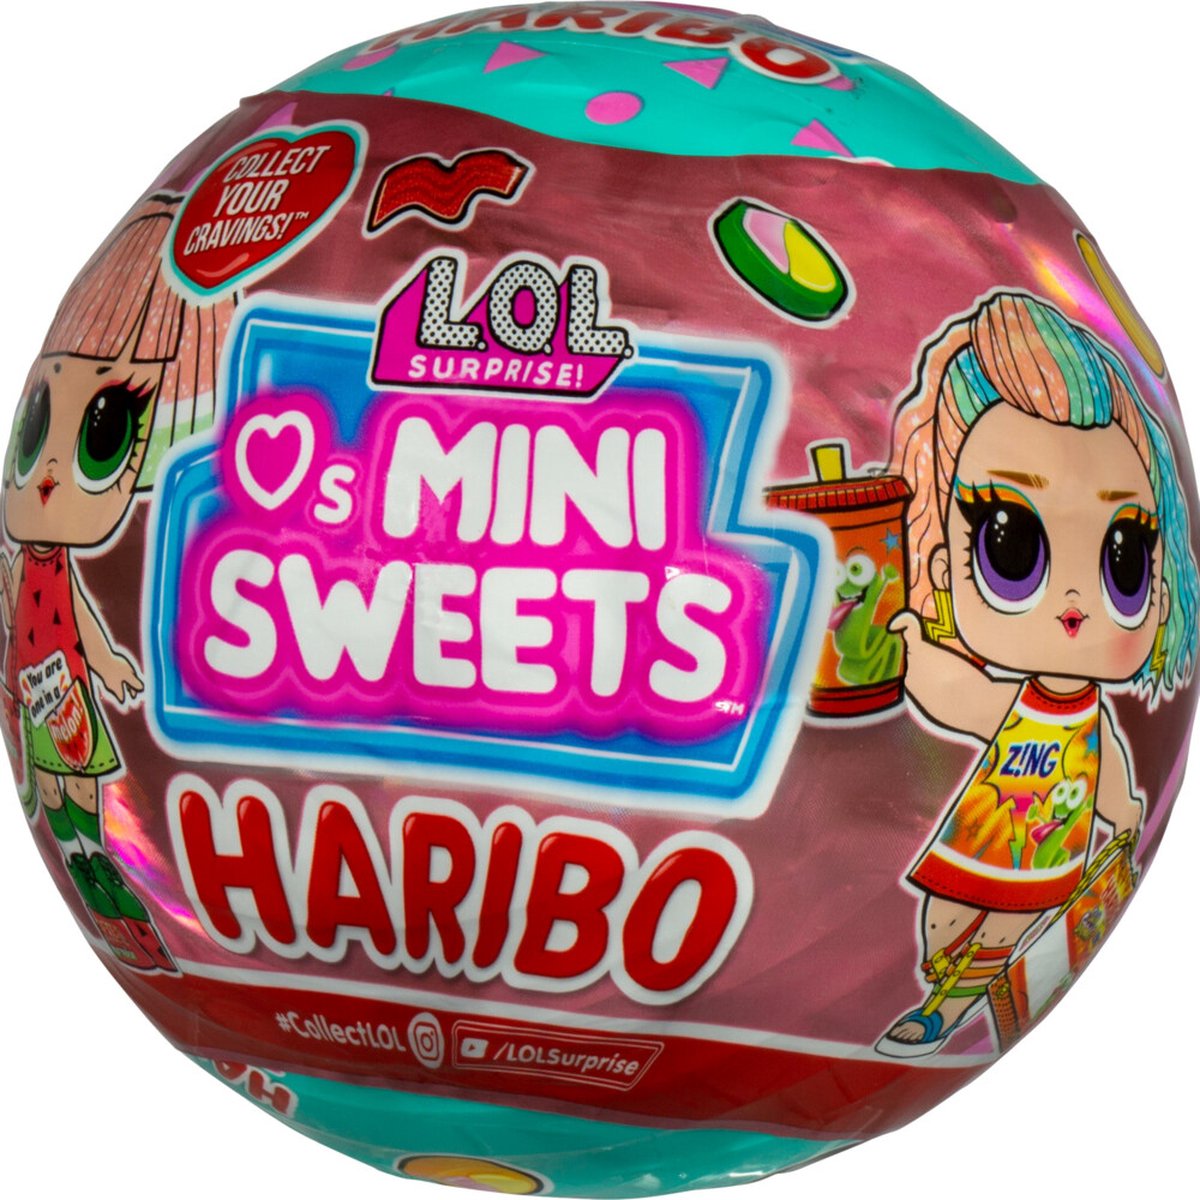 lol mini sweets haribo